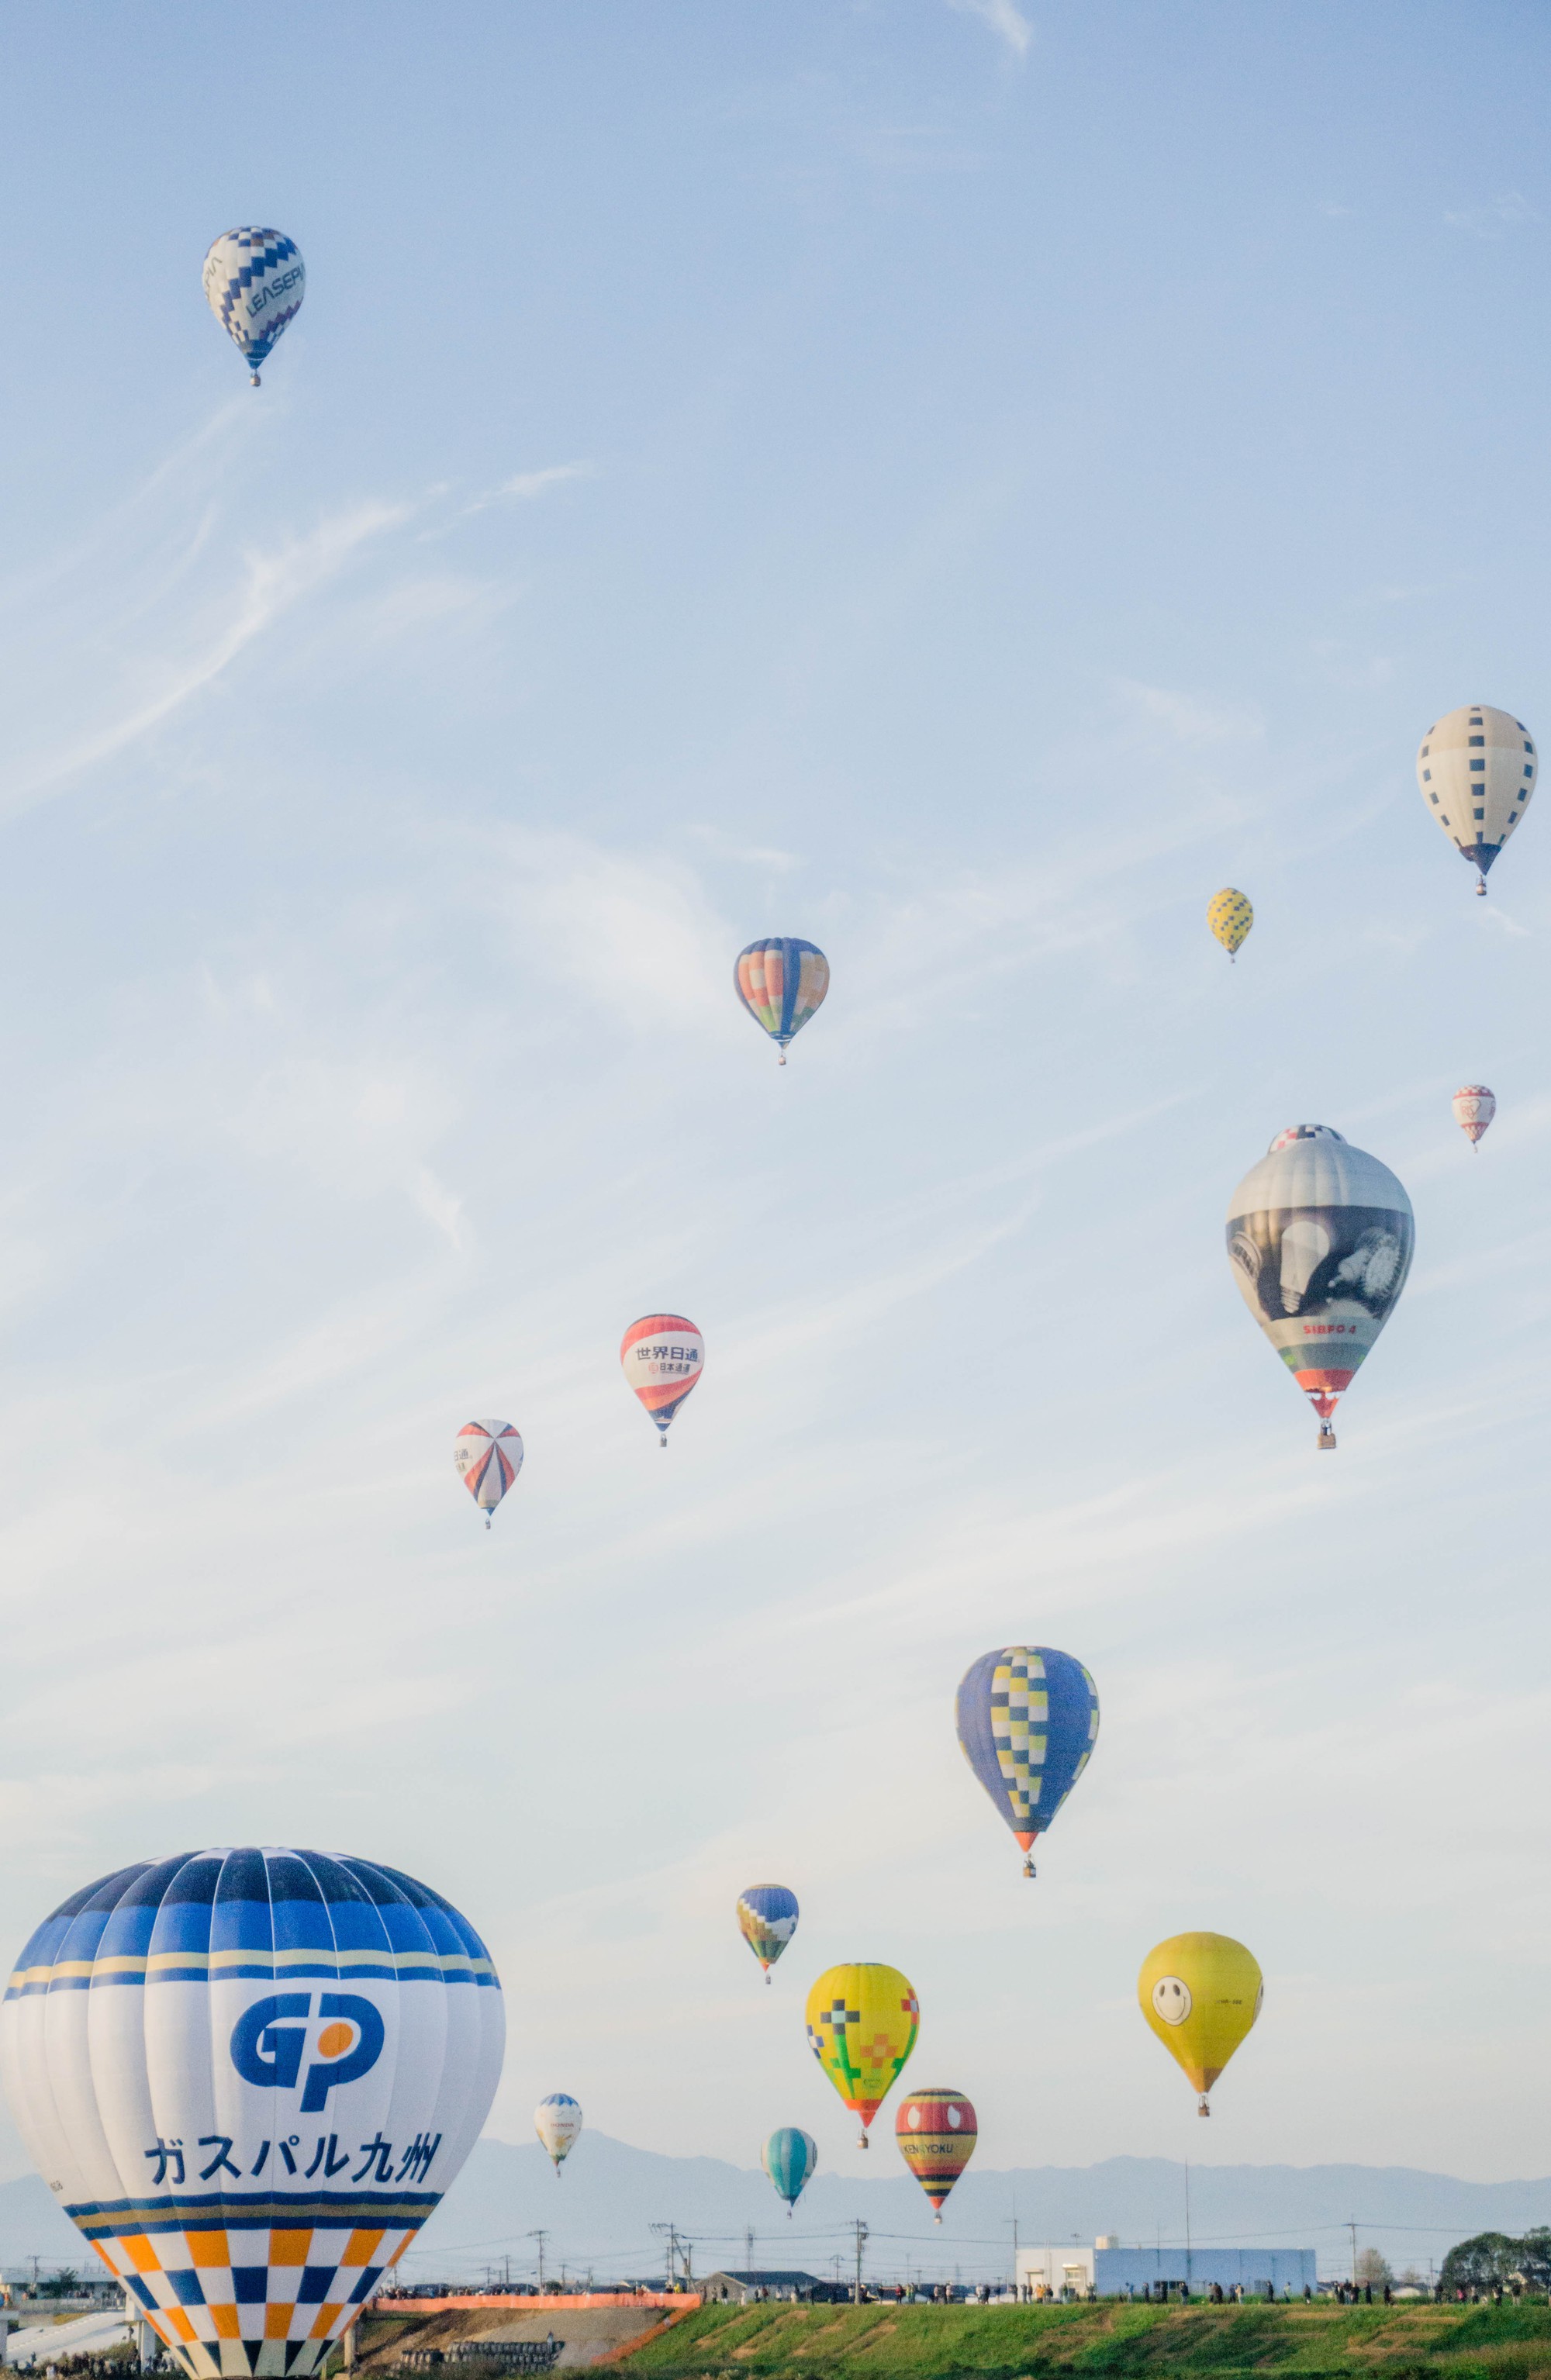 Lễ hội khinh khí cầu quy mô “khủng” thu hút triệu khách du lịch mỗi năm - Ảnh 6.